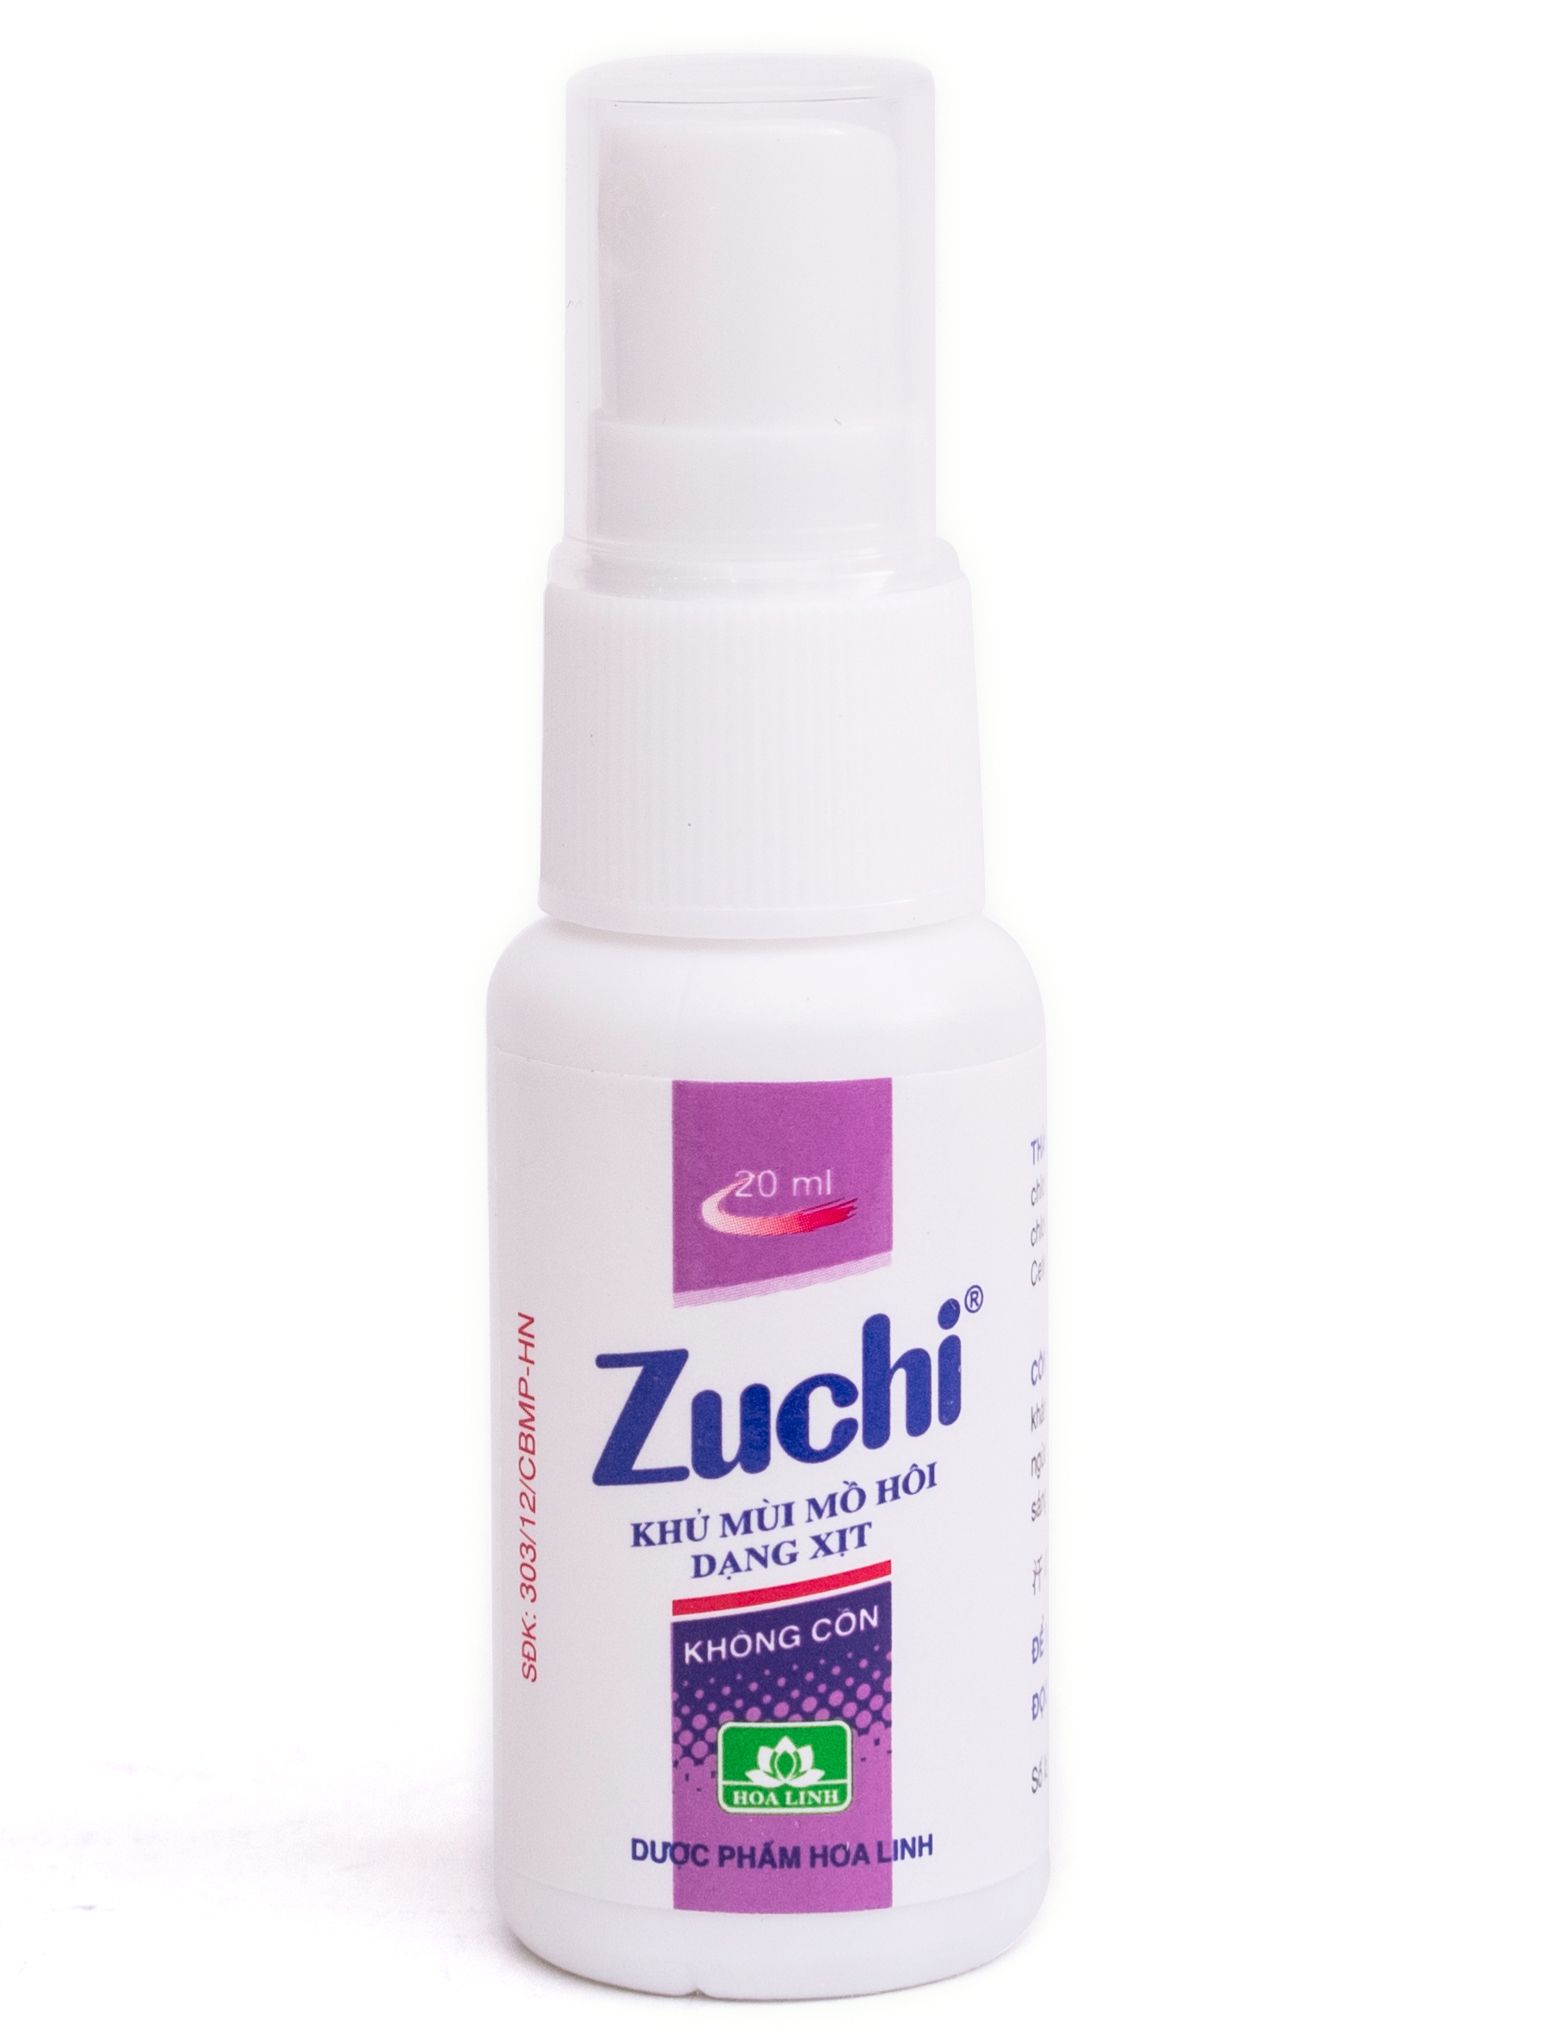 Khử mùi hôi dạng xịt Zuchi 20ml màu tím